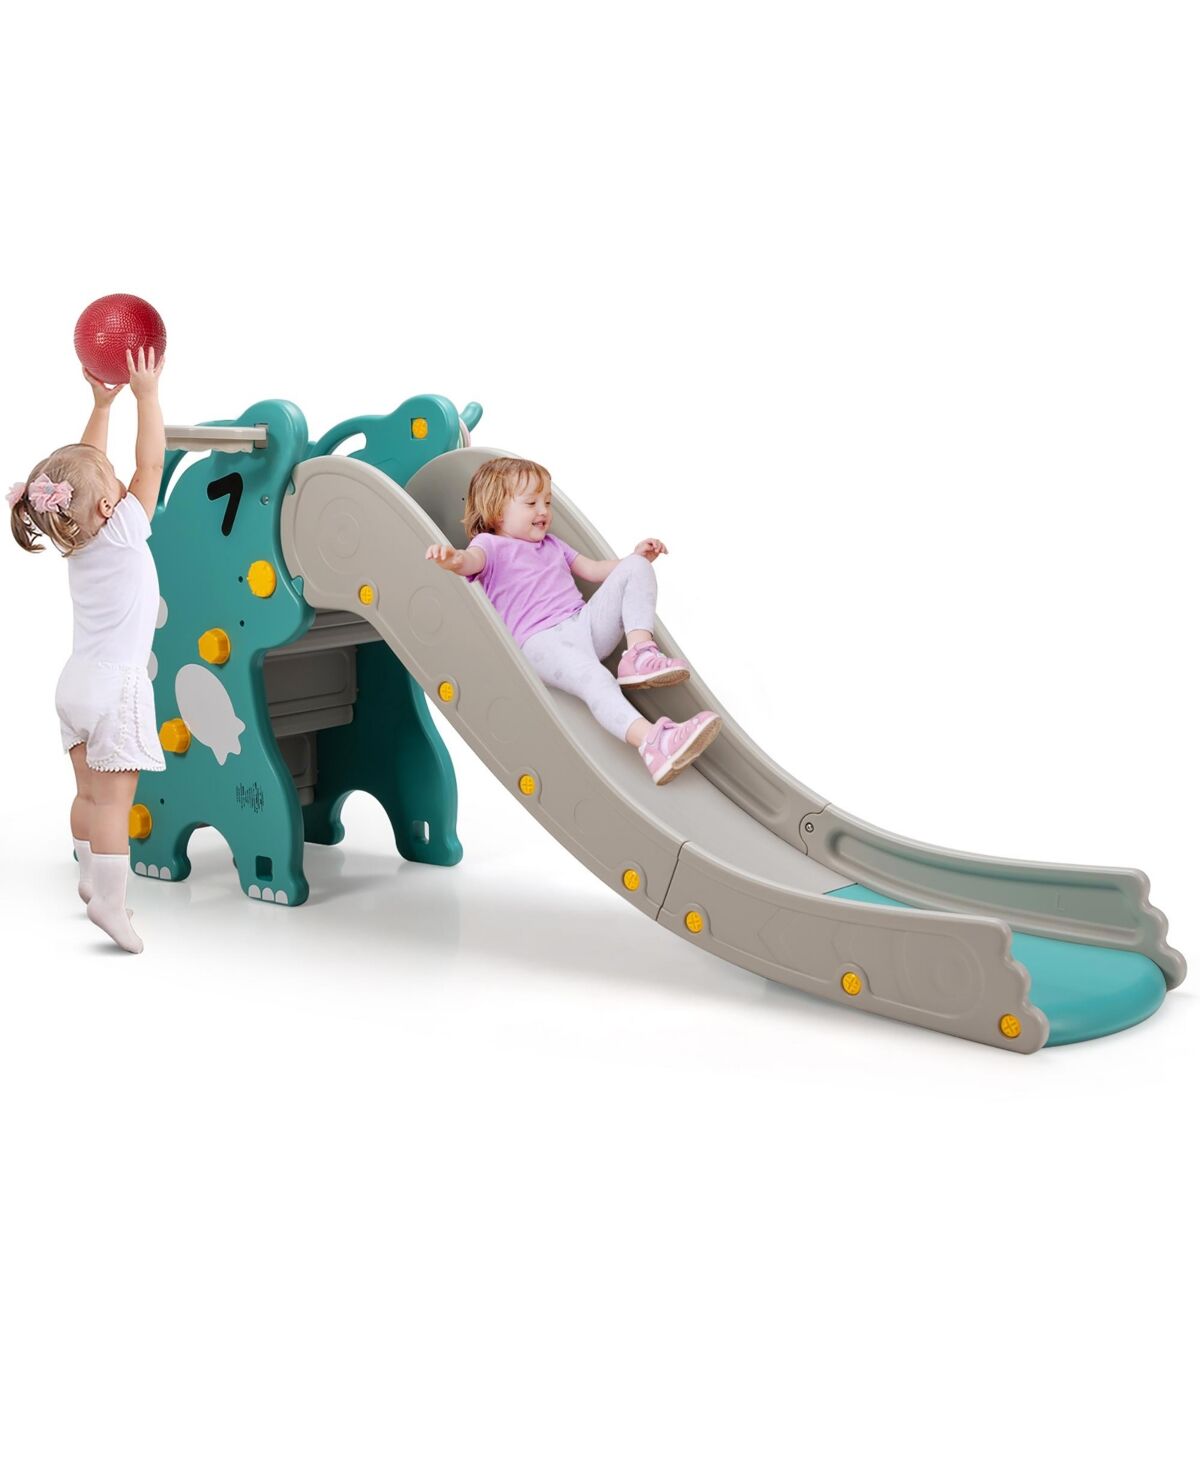 Costway 4 in 1 Kids Climber Slide Play Set w/Basketball Hoop & Toss Toy Indoor & Outdoor - Grey